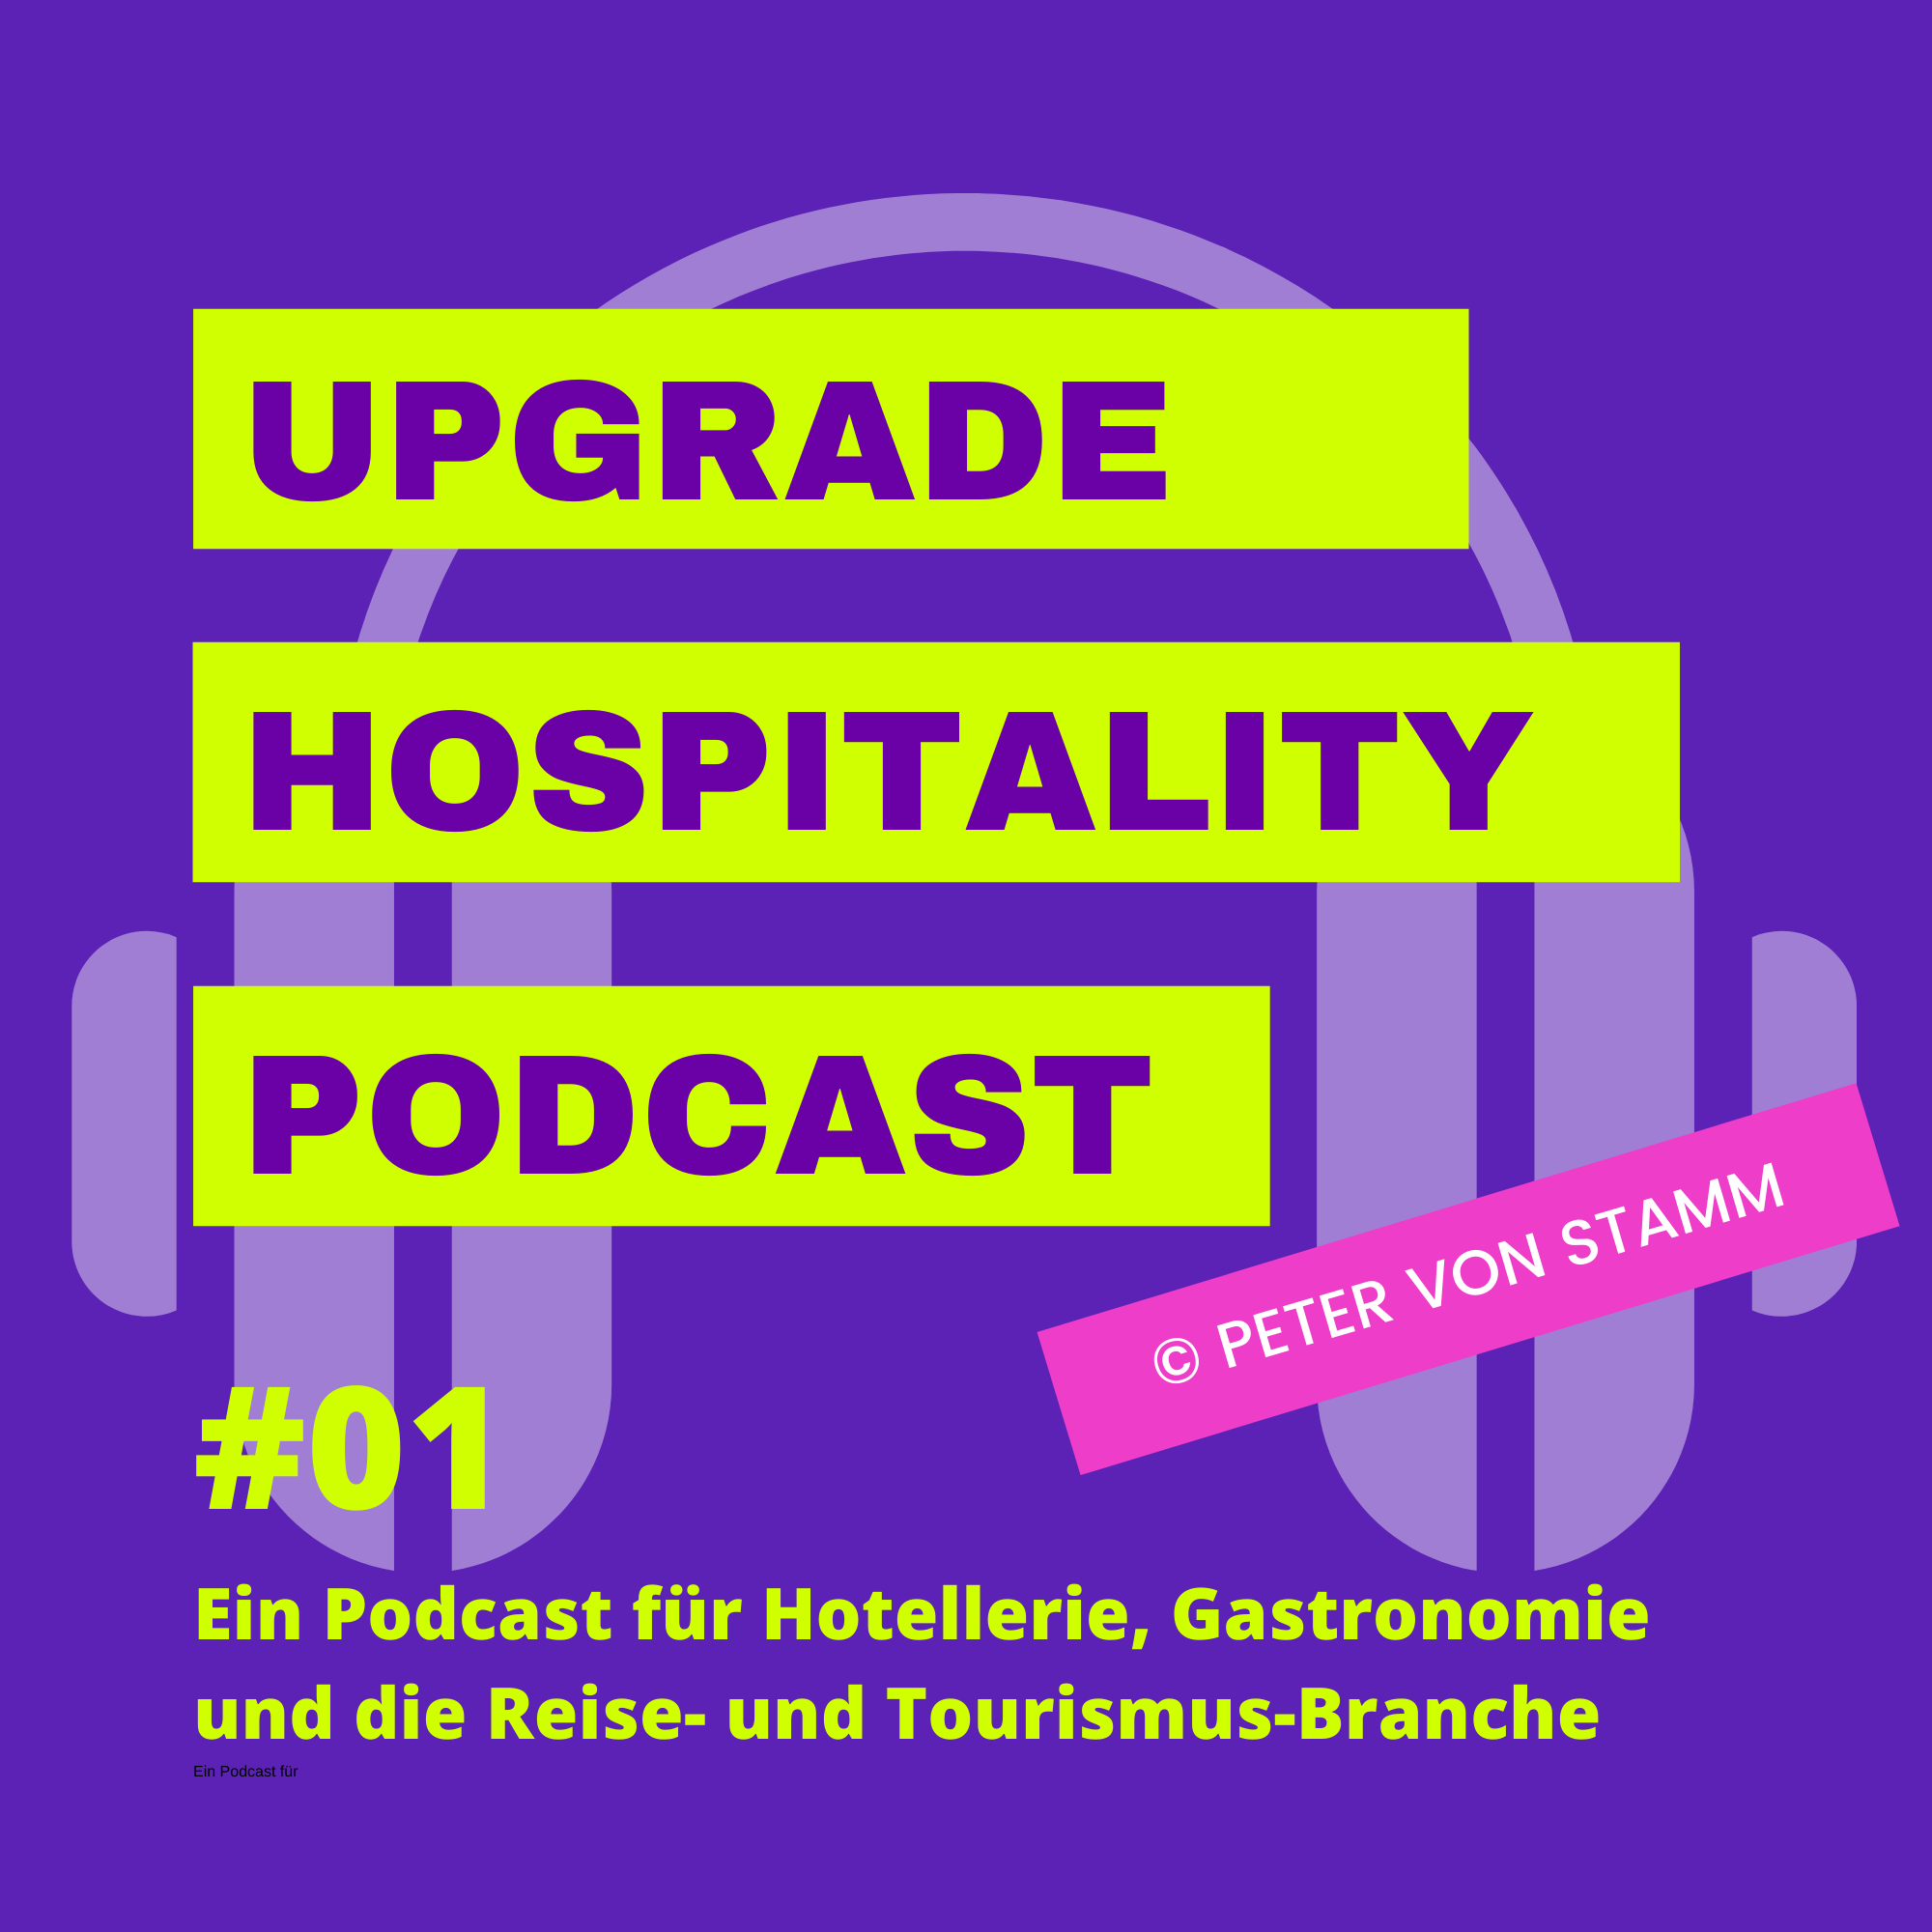 Upgrade Hospitality - der Podcast für Hotellerie und Gastronomie